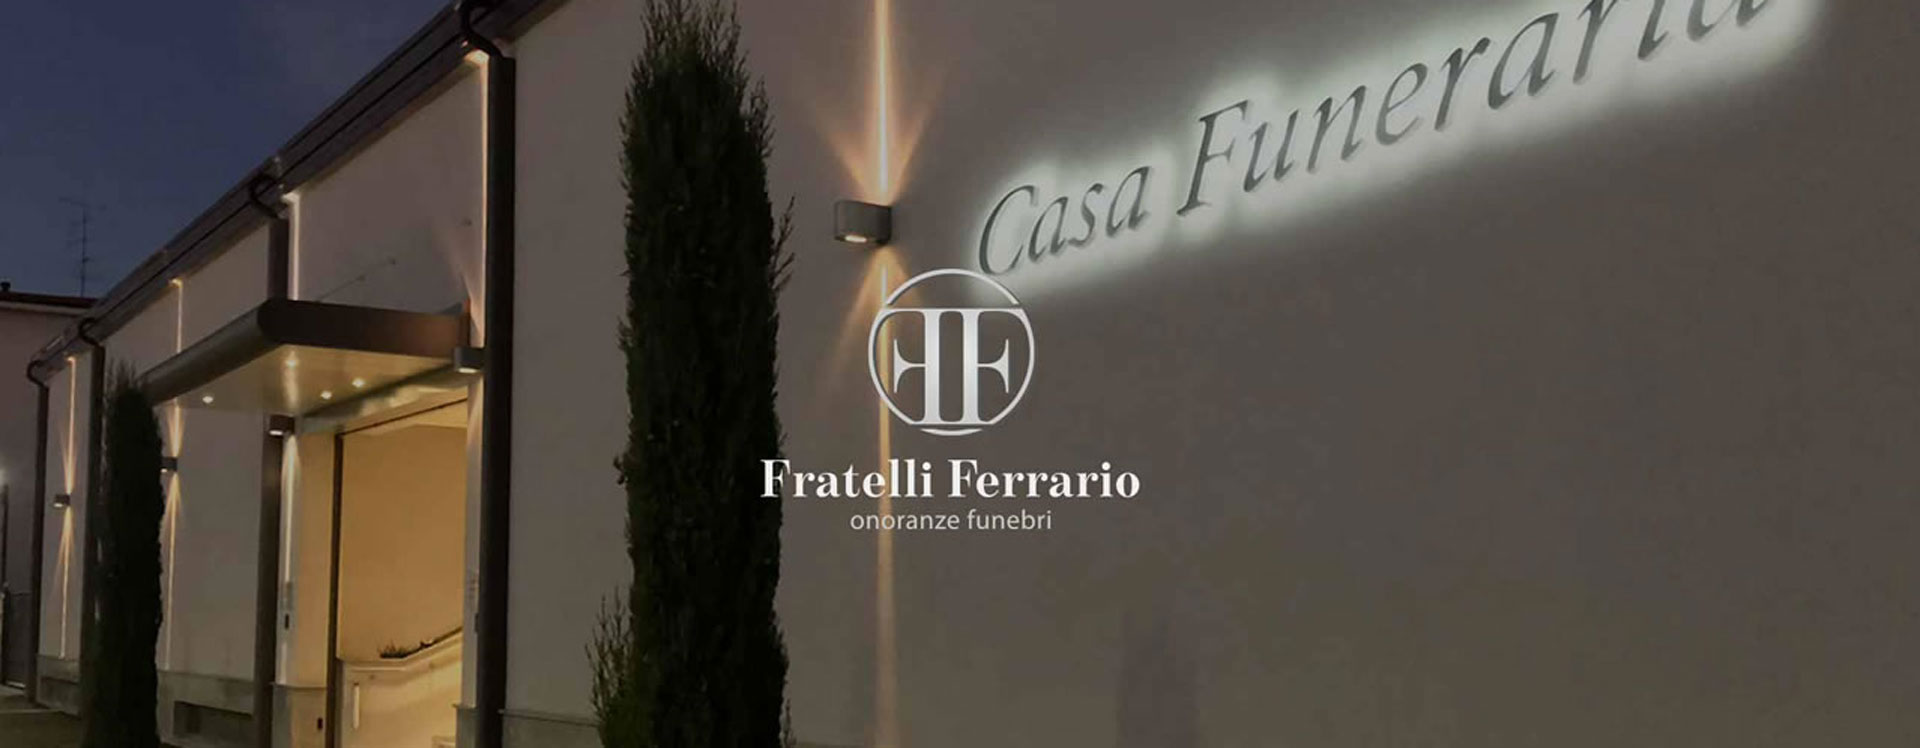 Phygital Marketing onoranze funebri Fratelli Ferrario | Case history Unique